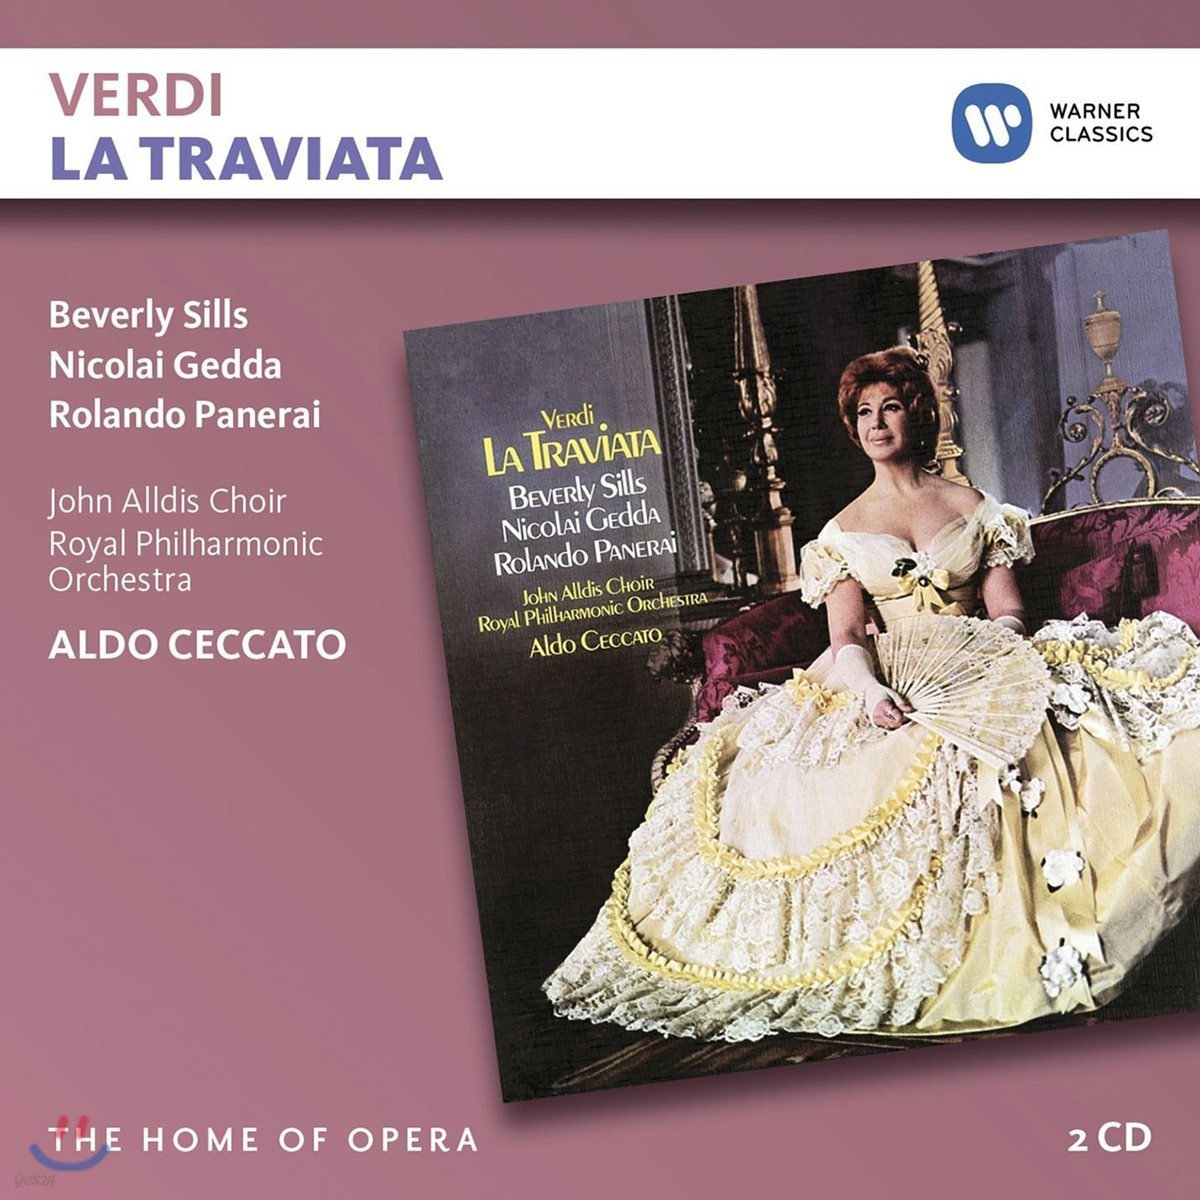 Beverly Sills / Aldo Ceccato 베르디: 라 트라비아타 (Verdi: La Traviata)